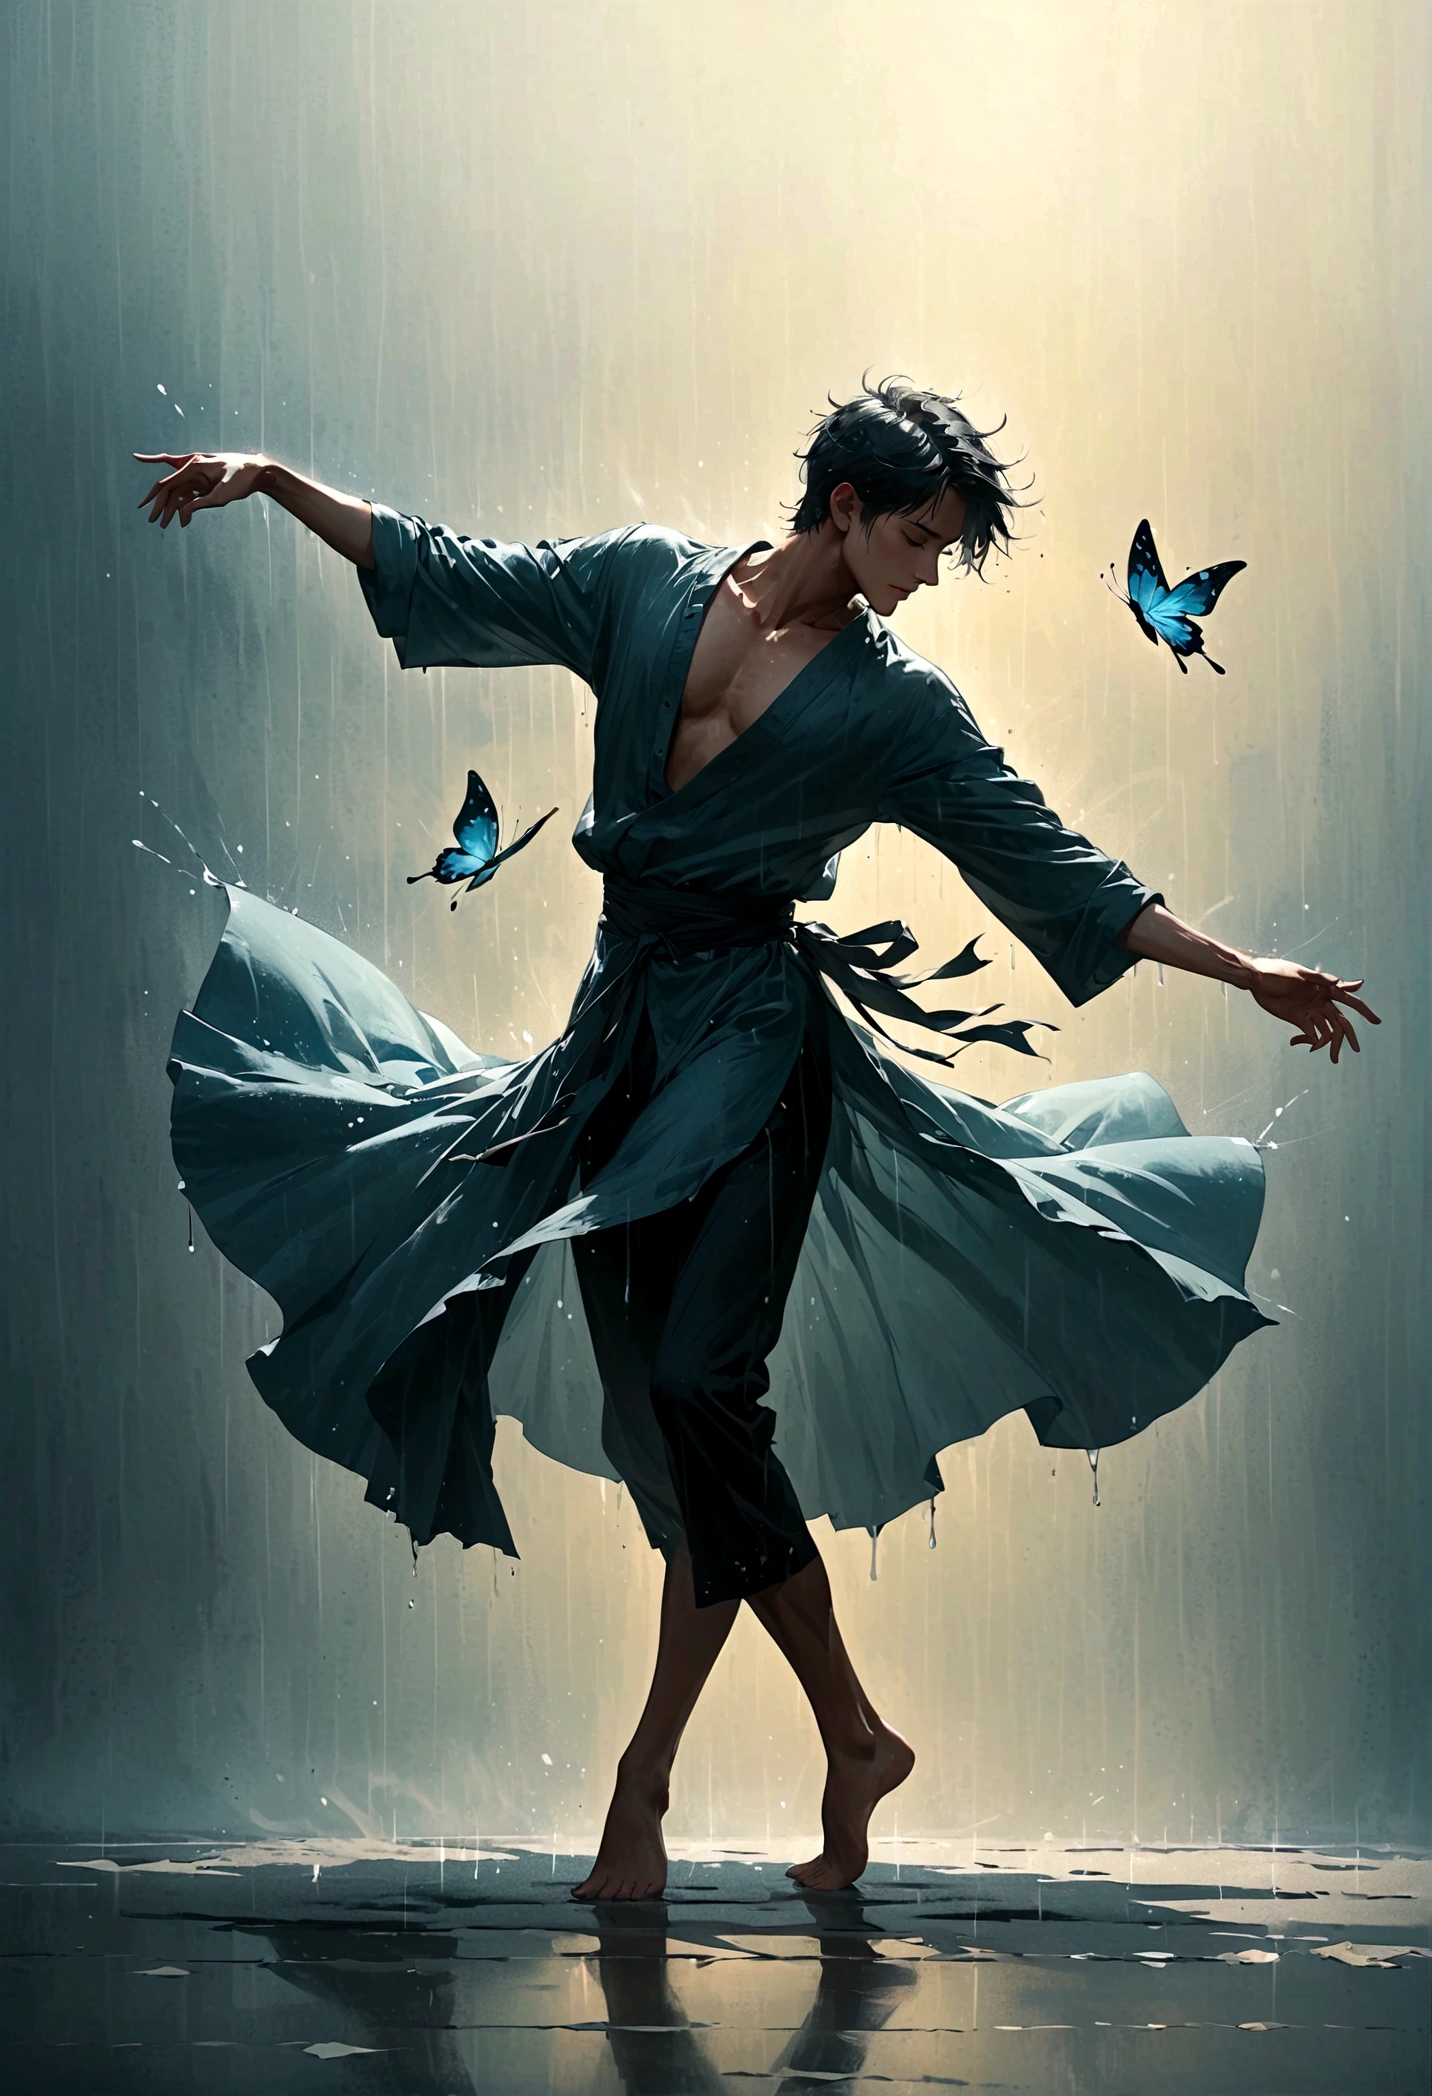 靈魂舞者馬克,無家可歸的人獨自在雨中跳舞，靈魂，赤腳，寬鬆且破舊的衣服，專業芭蕾舞動作，指尖1隻蝴蝶，很有感染力，濺，光與影，極簡主義，意境，乾淨的背景